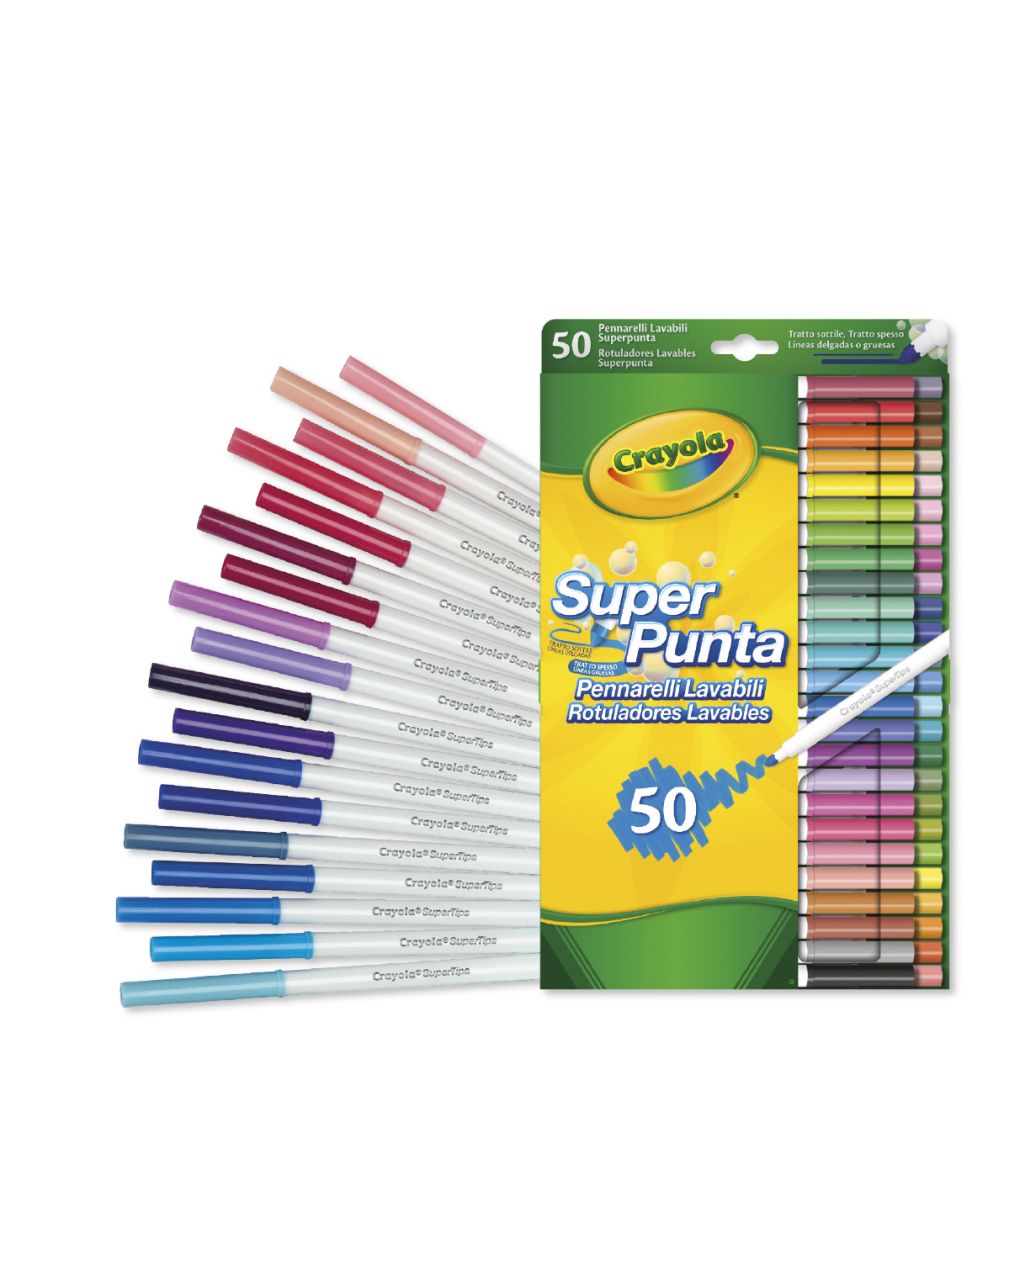 Crayola - 50 marcadores laváveis de ponta super - Crayola